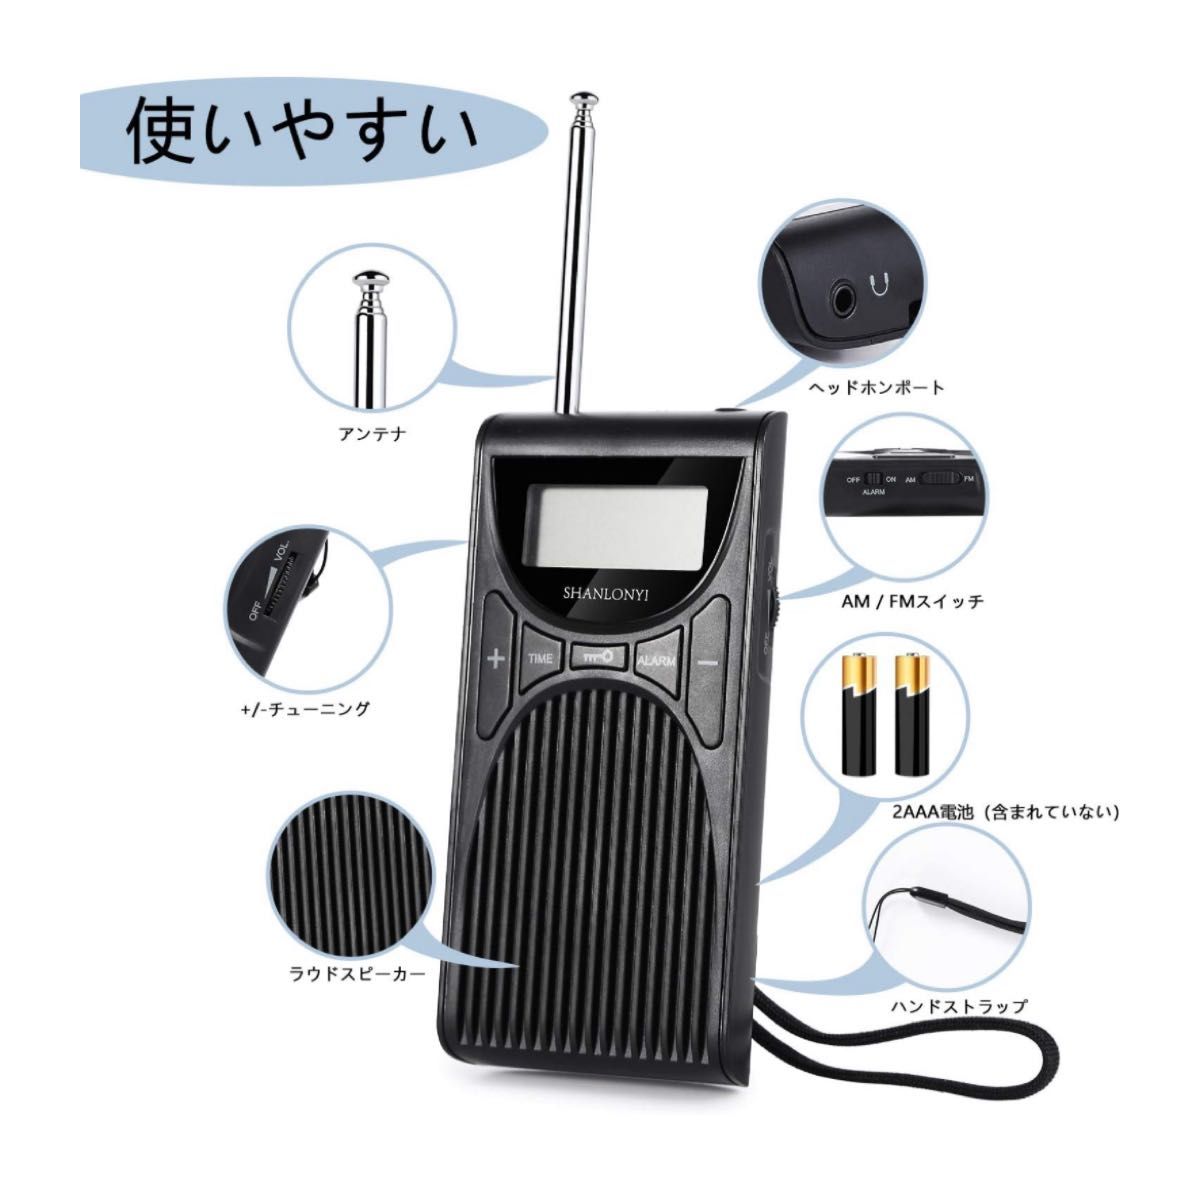 人気ポータブルラジオ 小型 防災 ミニラジオワイドFM対応 乾電池式 多機能 ポケットラジオ ラジオ ポータブルラジオ 